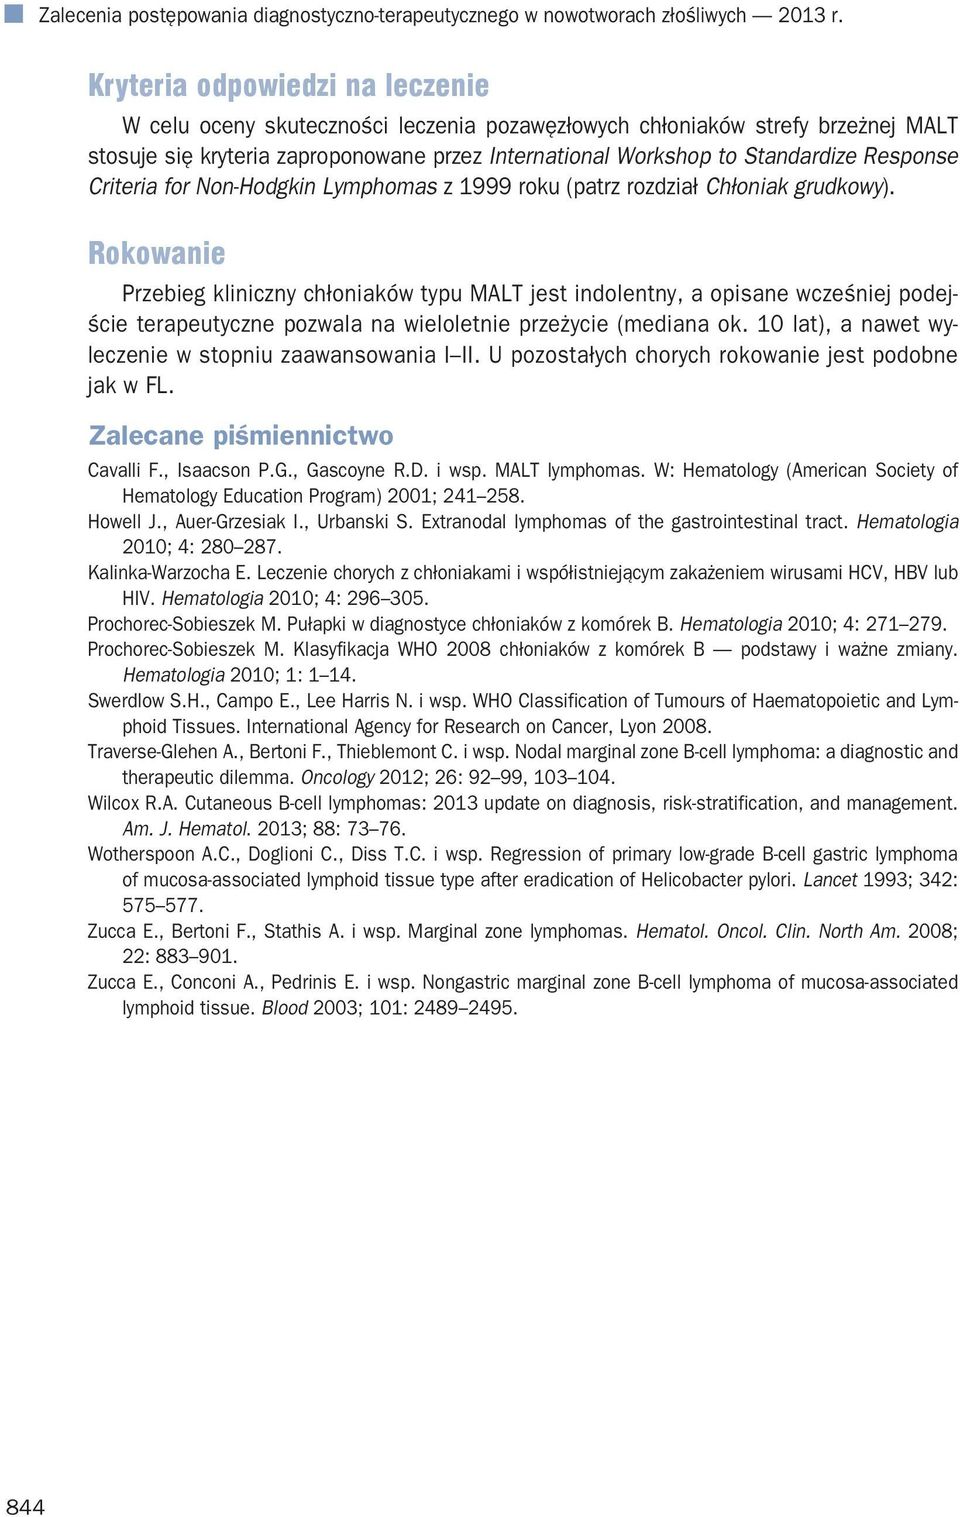 Response Criteria for Non-Hodgkin Lymphomas z 1999 roku (patrz rozdział Chłoniak grudkowy).